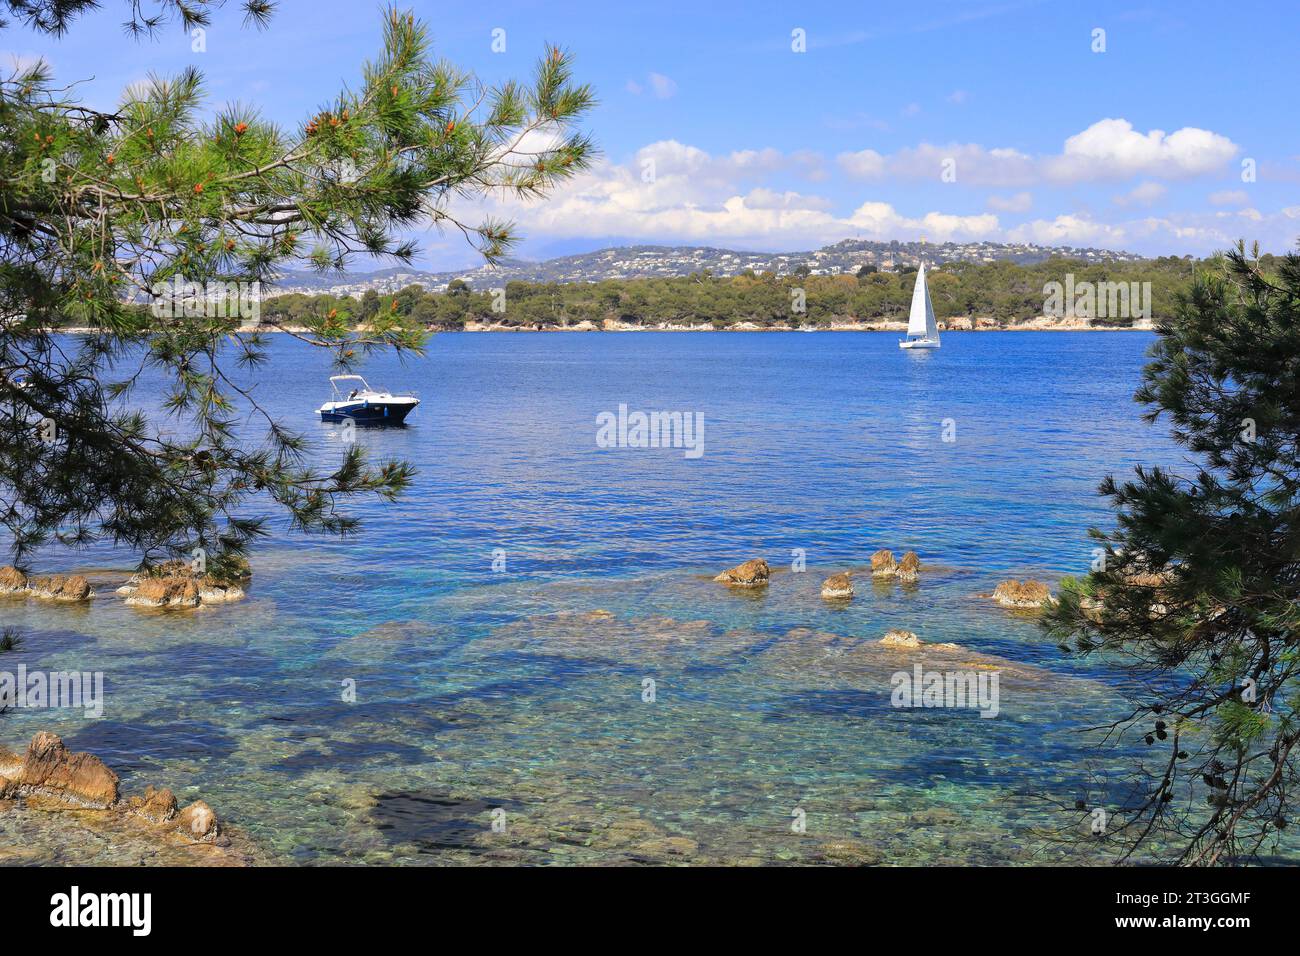 France, Alpes Maritimes, Cannes, Iles de Lérins, Ile Sainte Marguerite vue de l'Ile Saint Honorat Banque D'Images